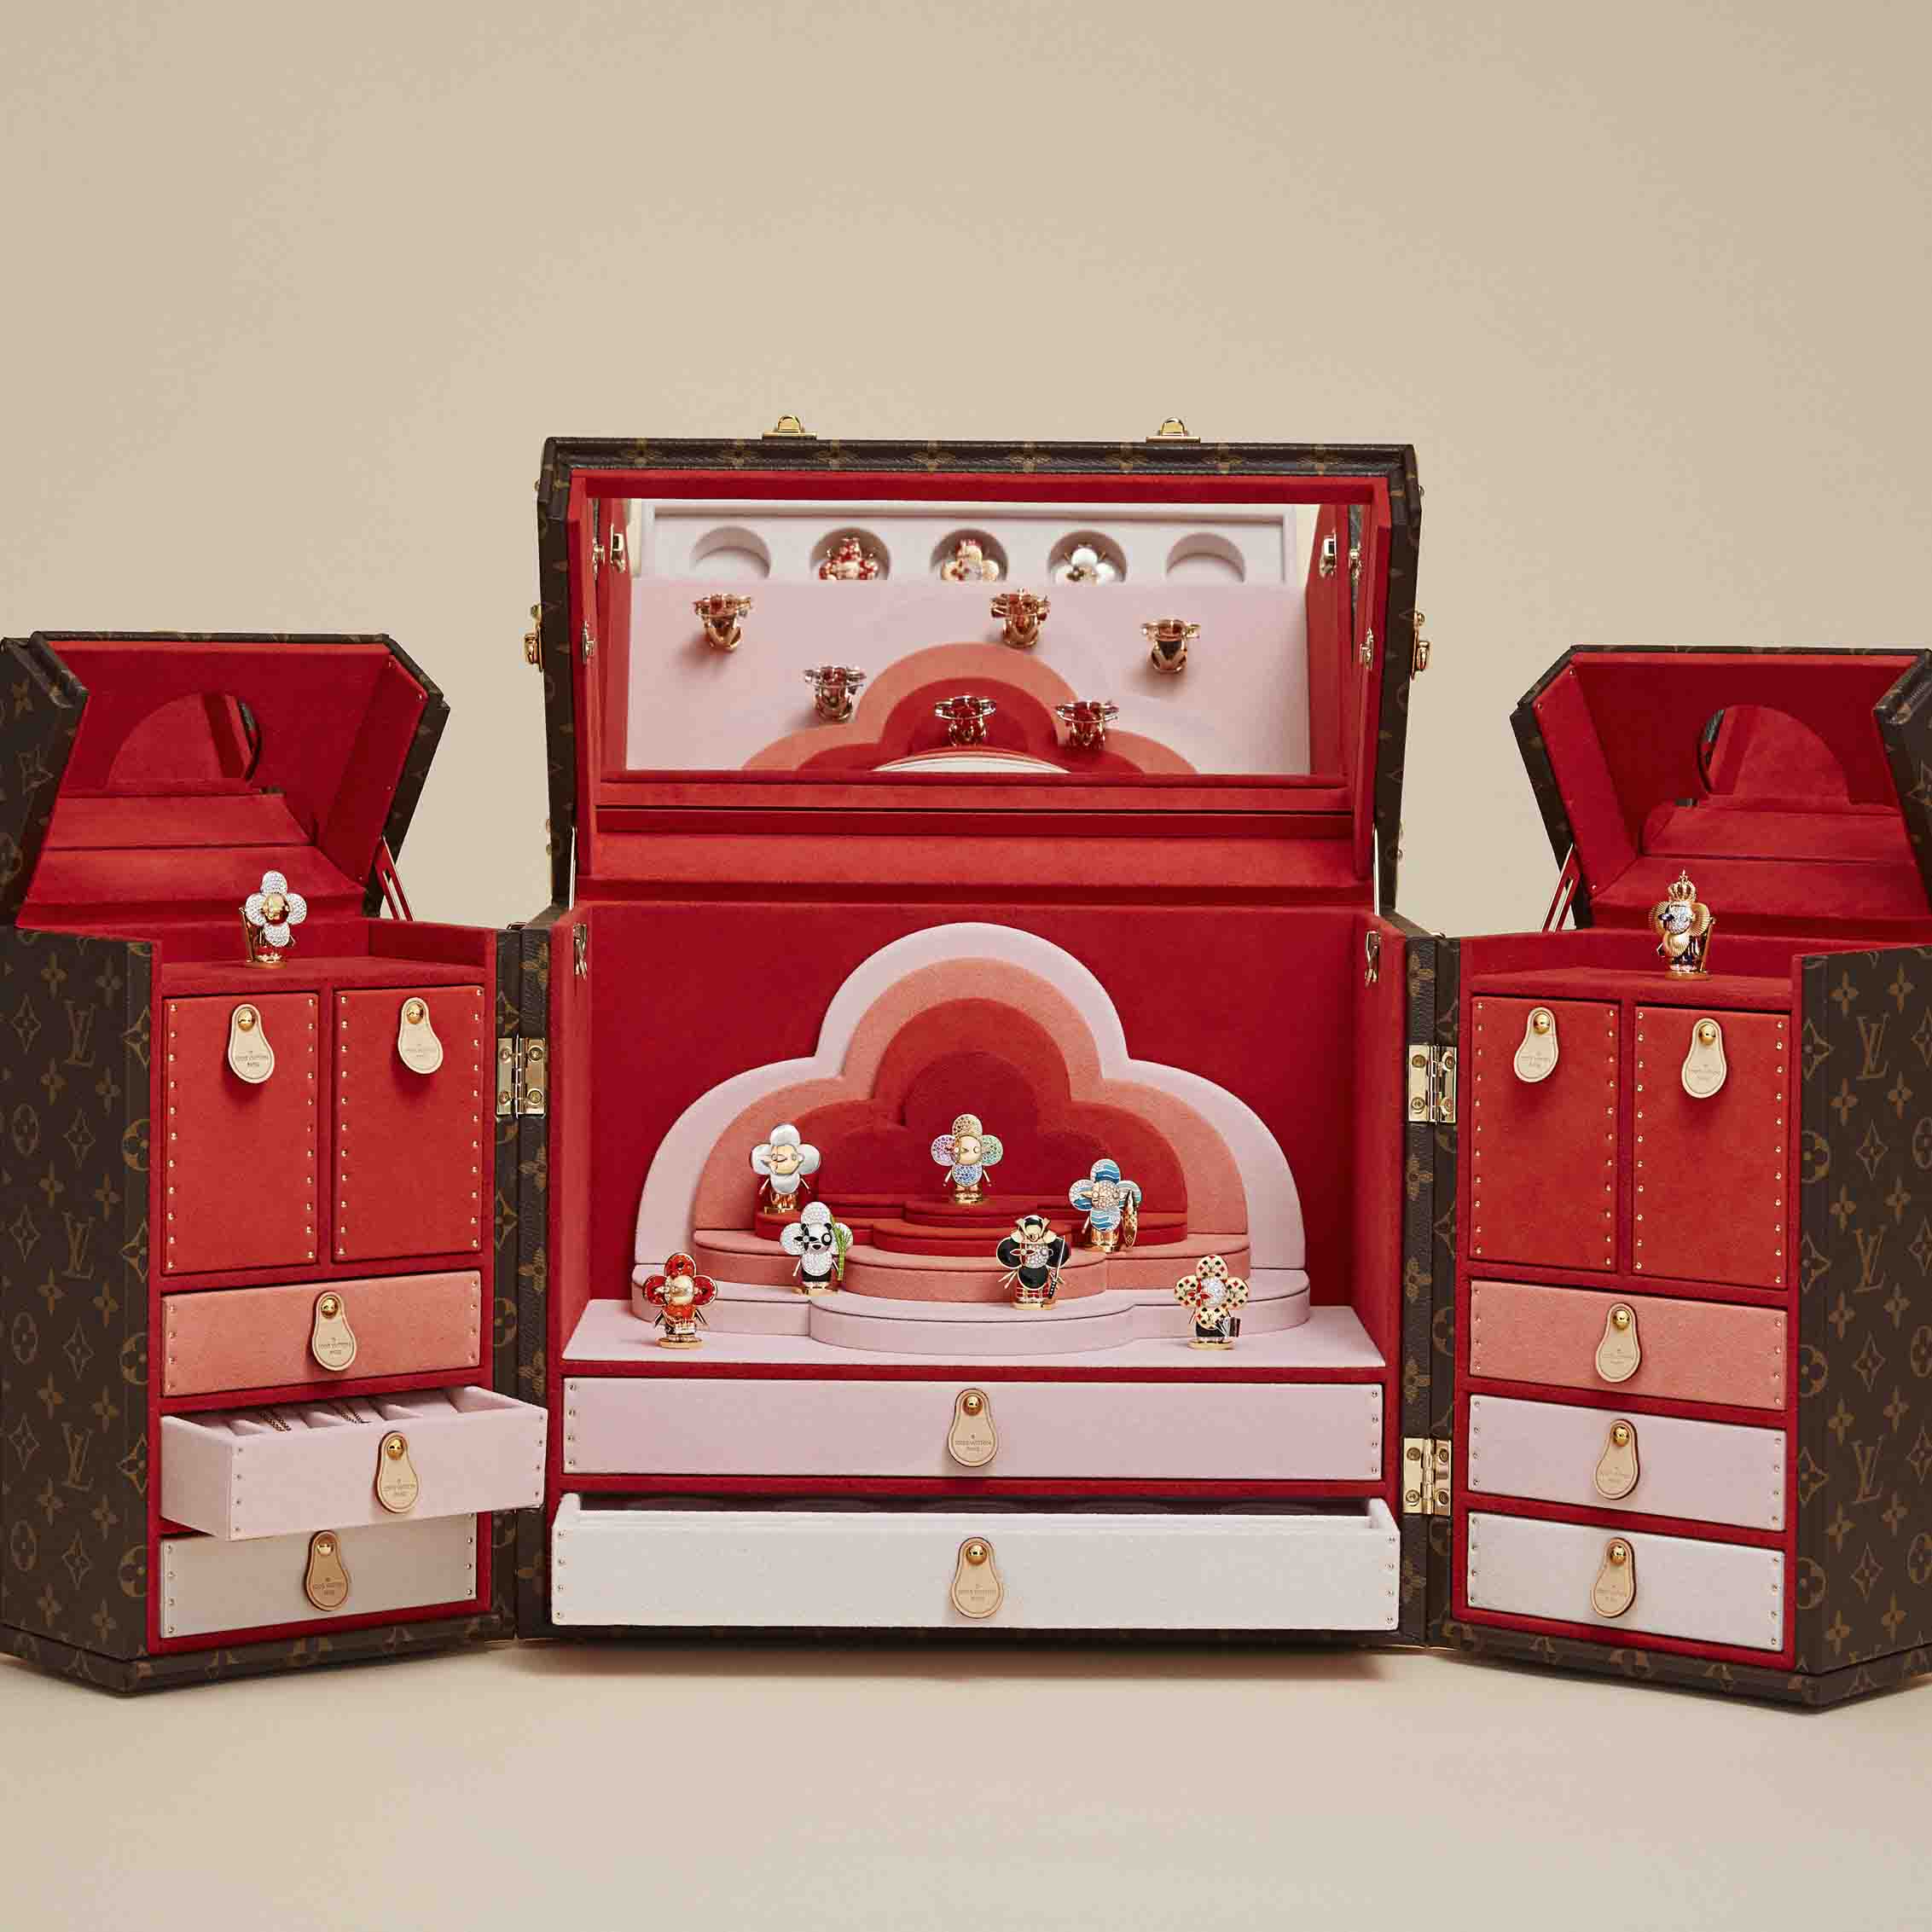 Louis Vuitton LV Paris Trousse Bijoux Jewelry Trunk Box Case